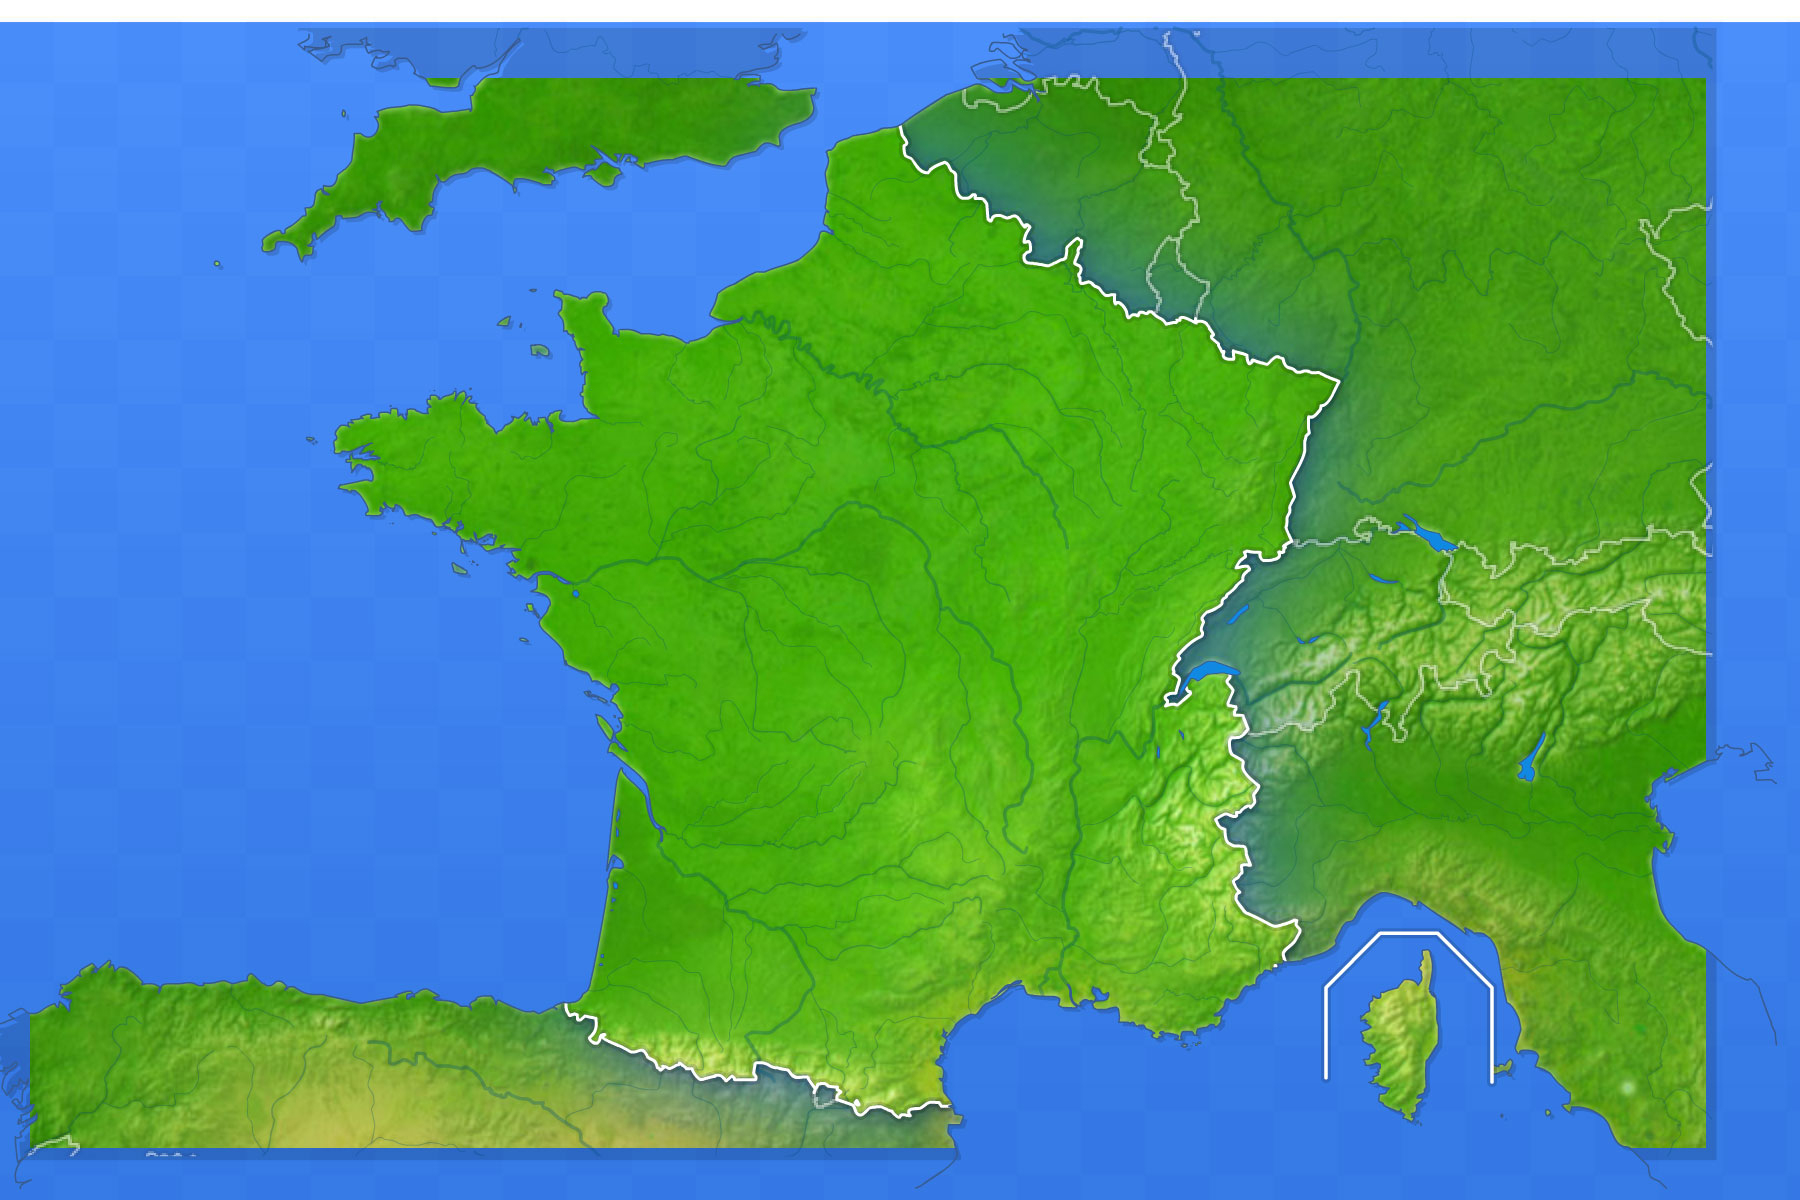 Jeux-Geographiques Jeux Gratuits Jeu Villes De France avec Jeu Geographie France